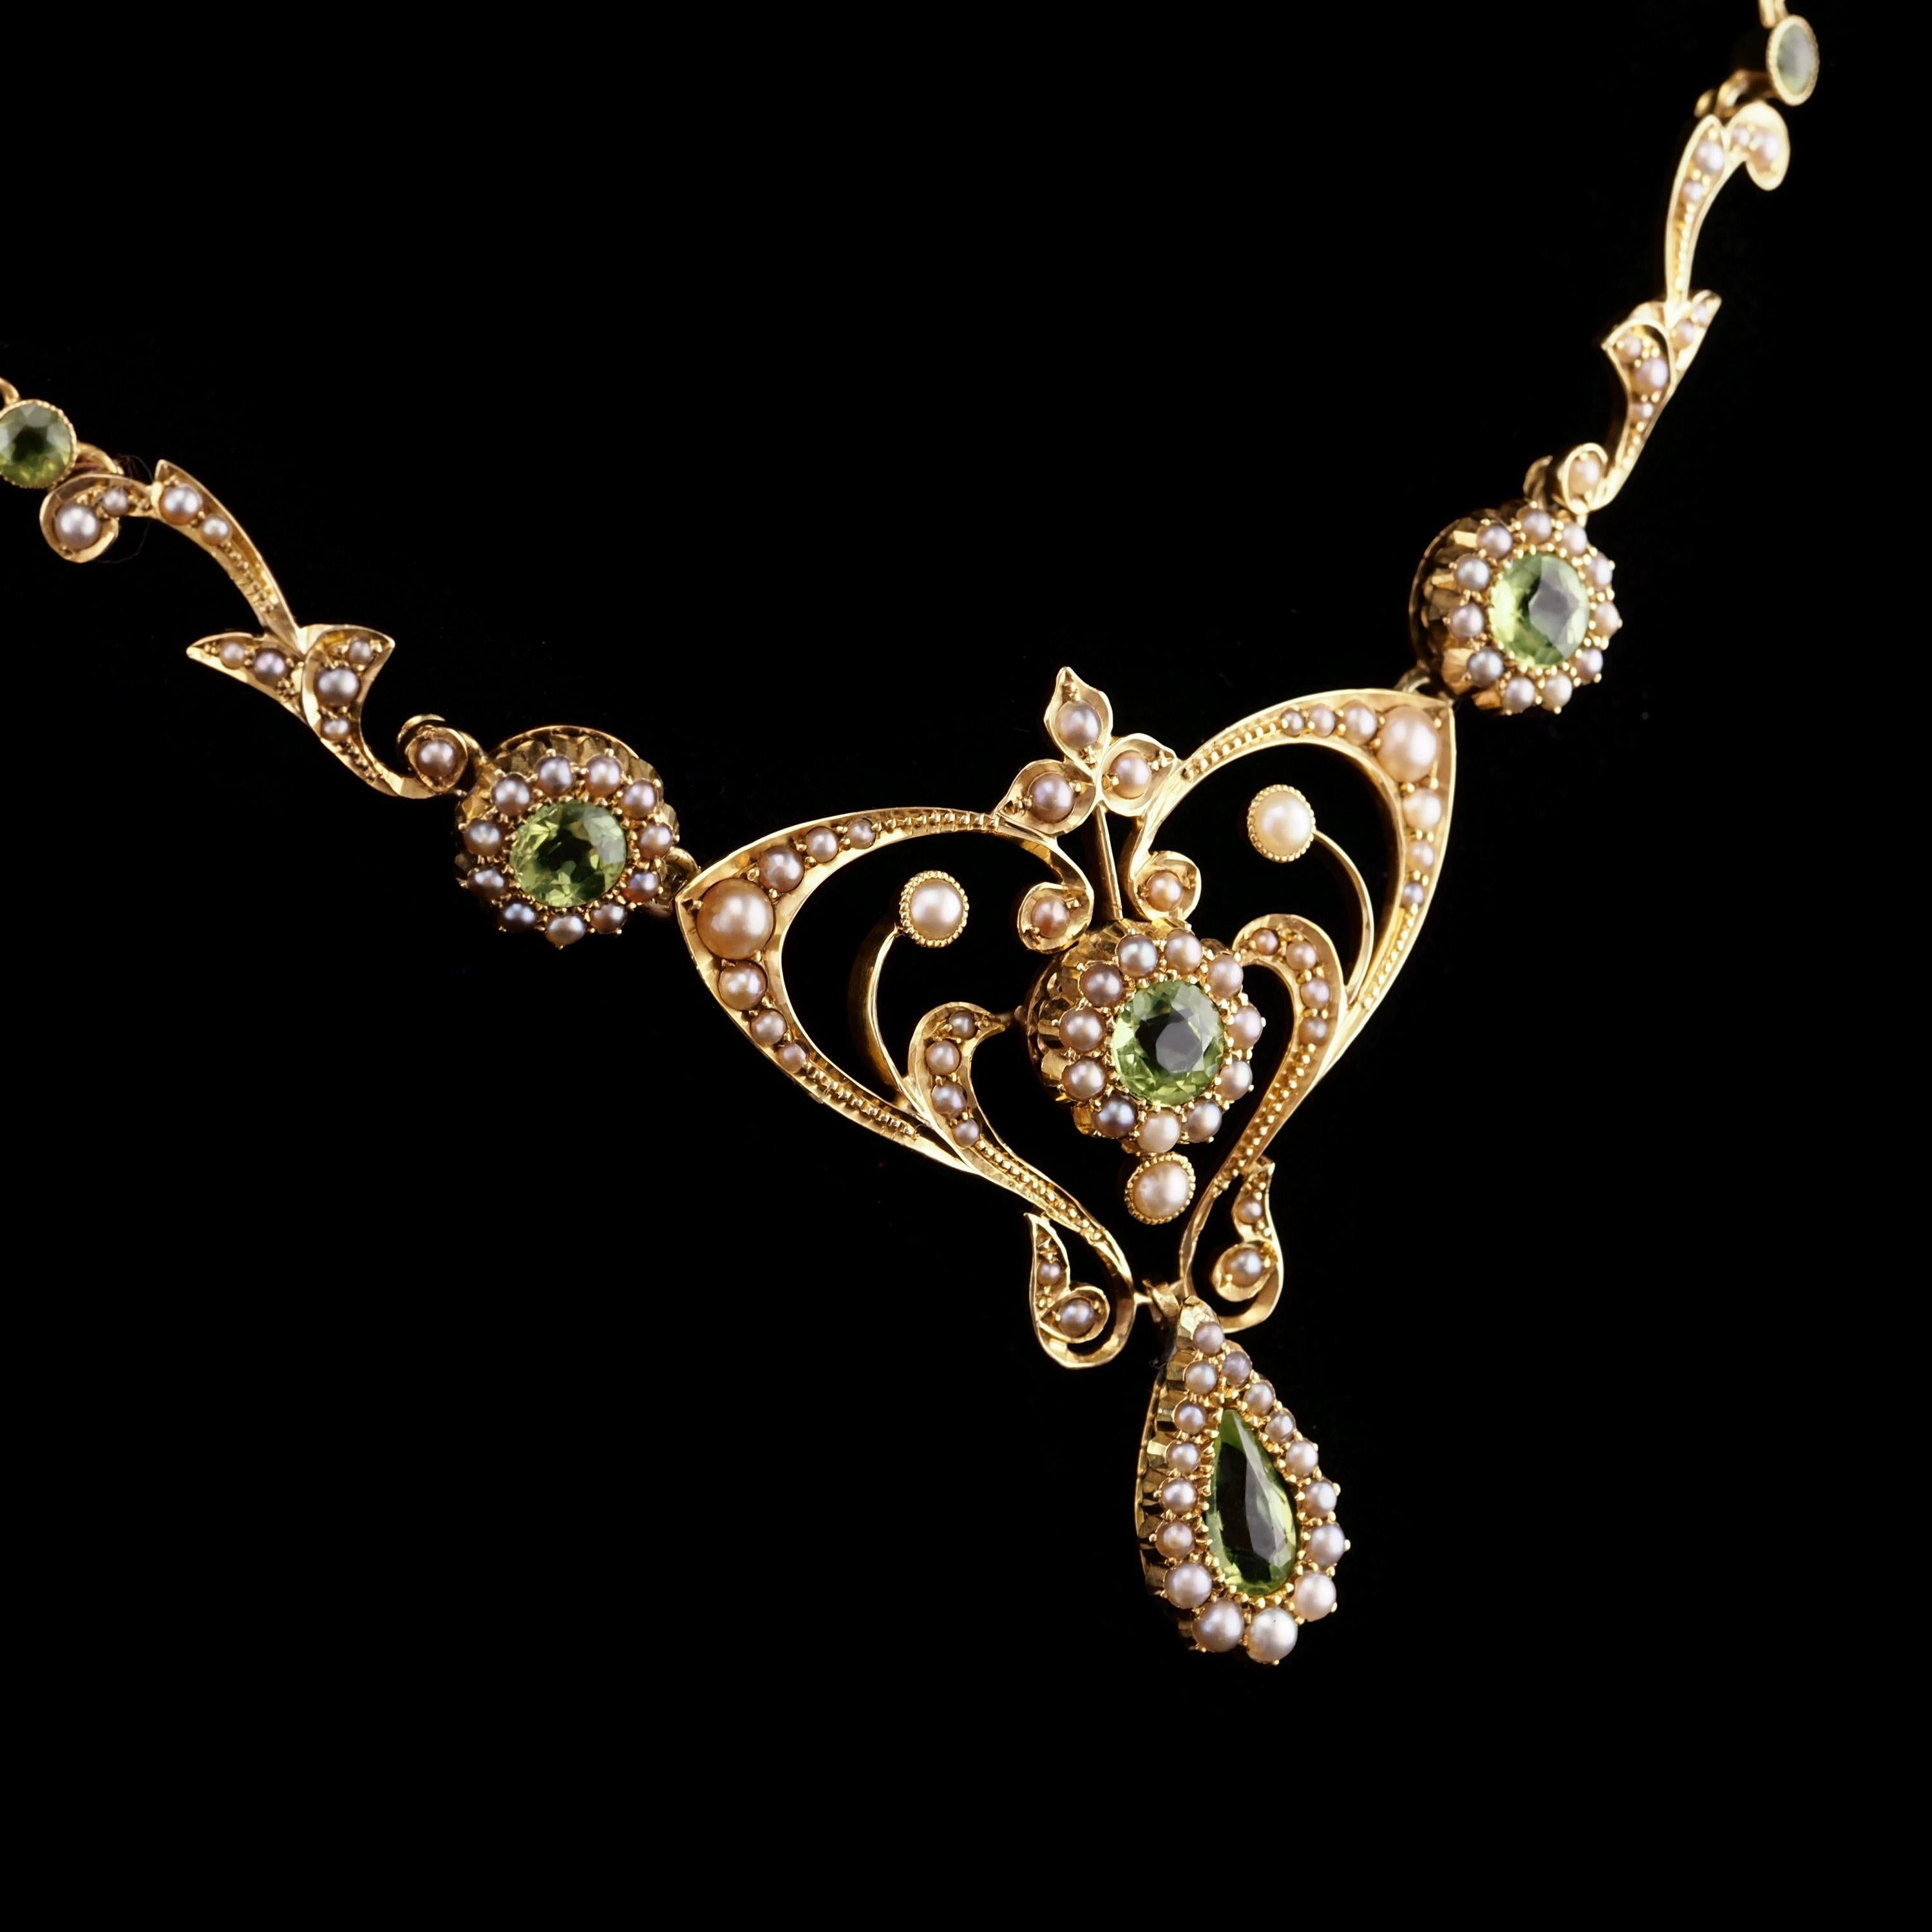 Women's or Men's Antique 15K Gold Peridot & Pearl Lavalier Necklace - Art Nouveau c.1900s